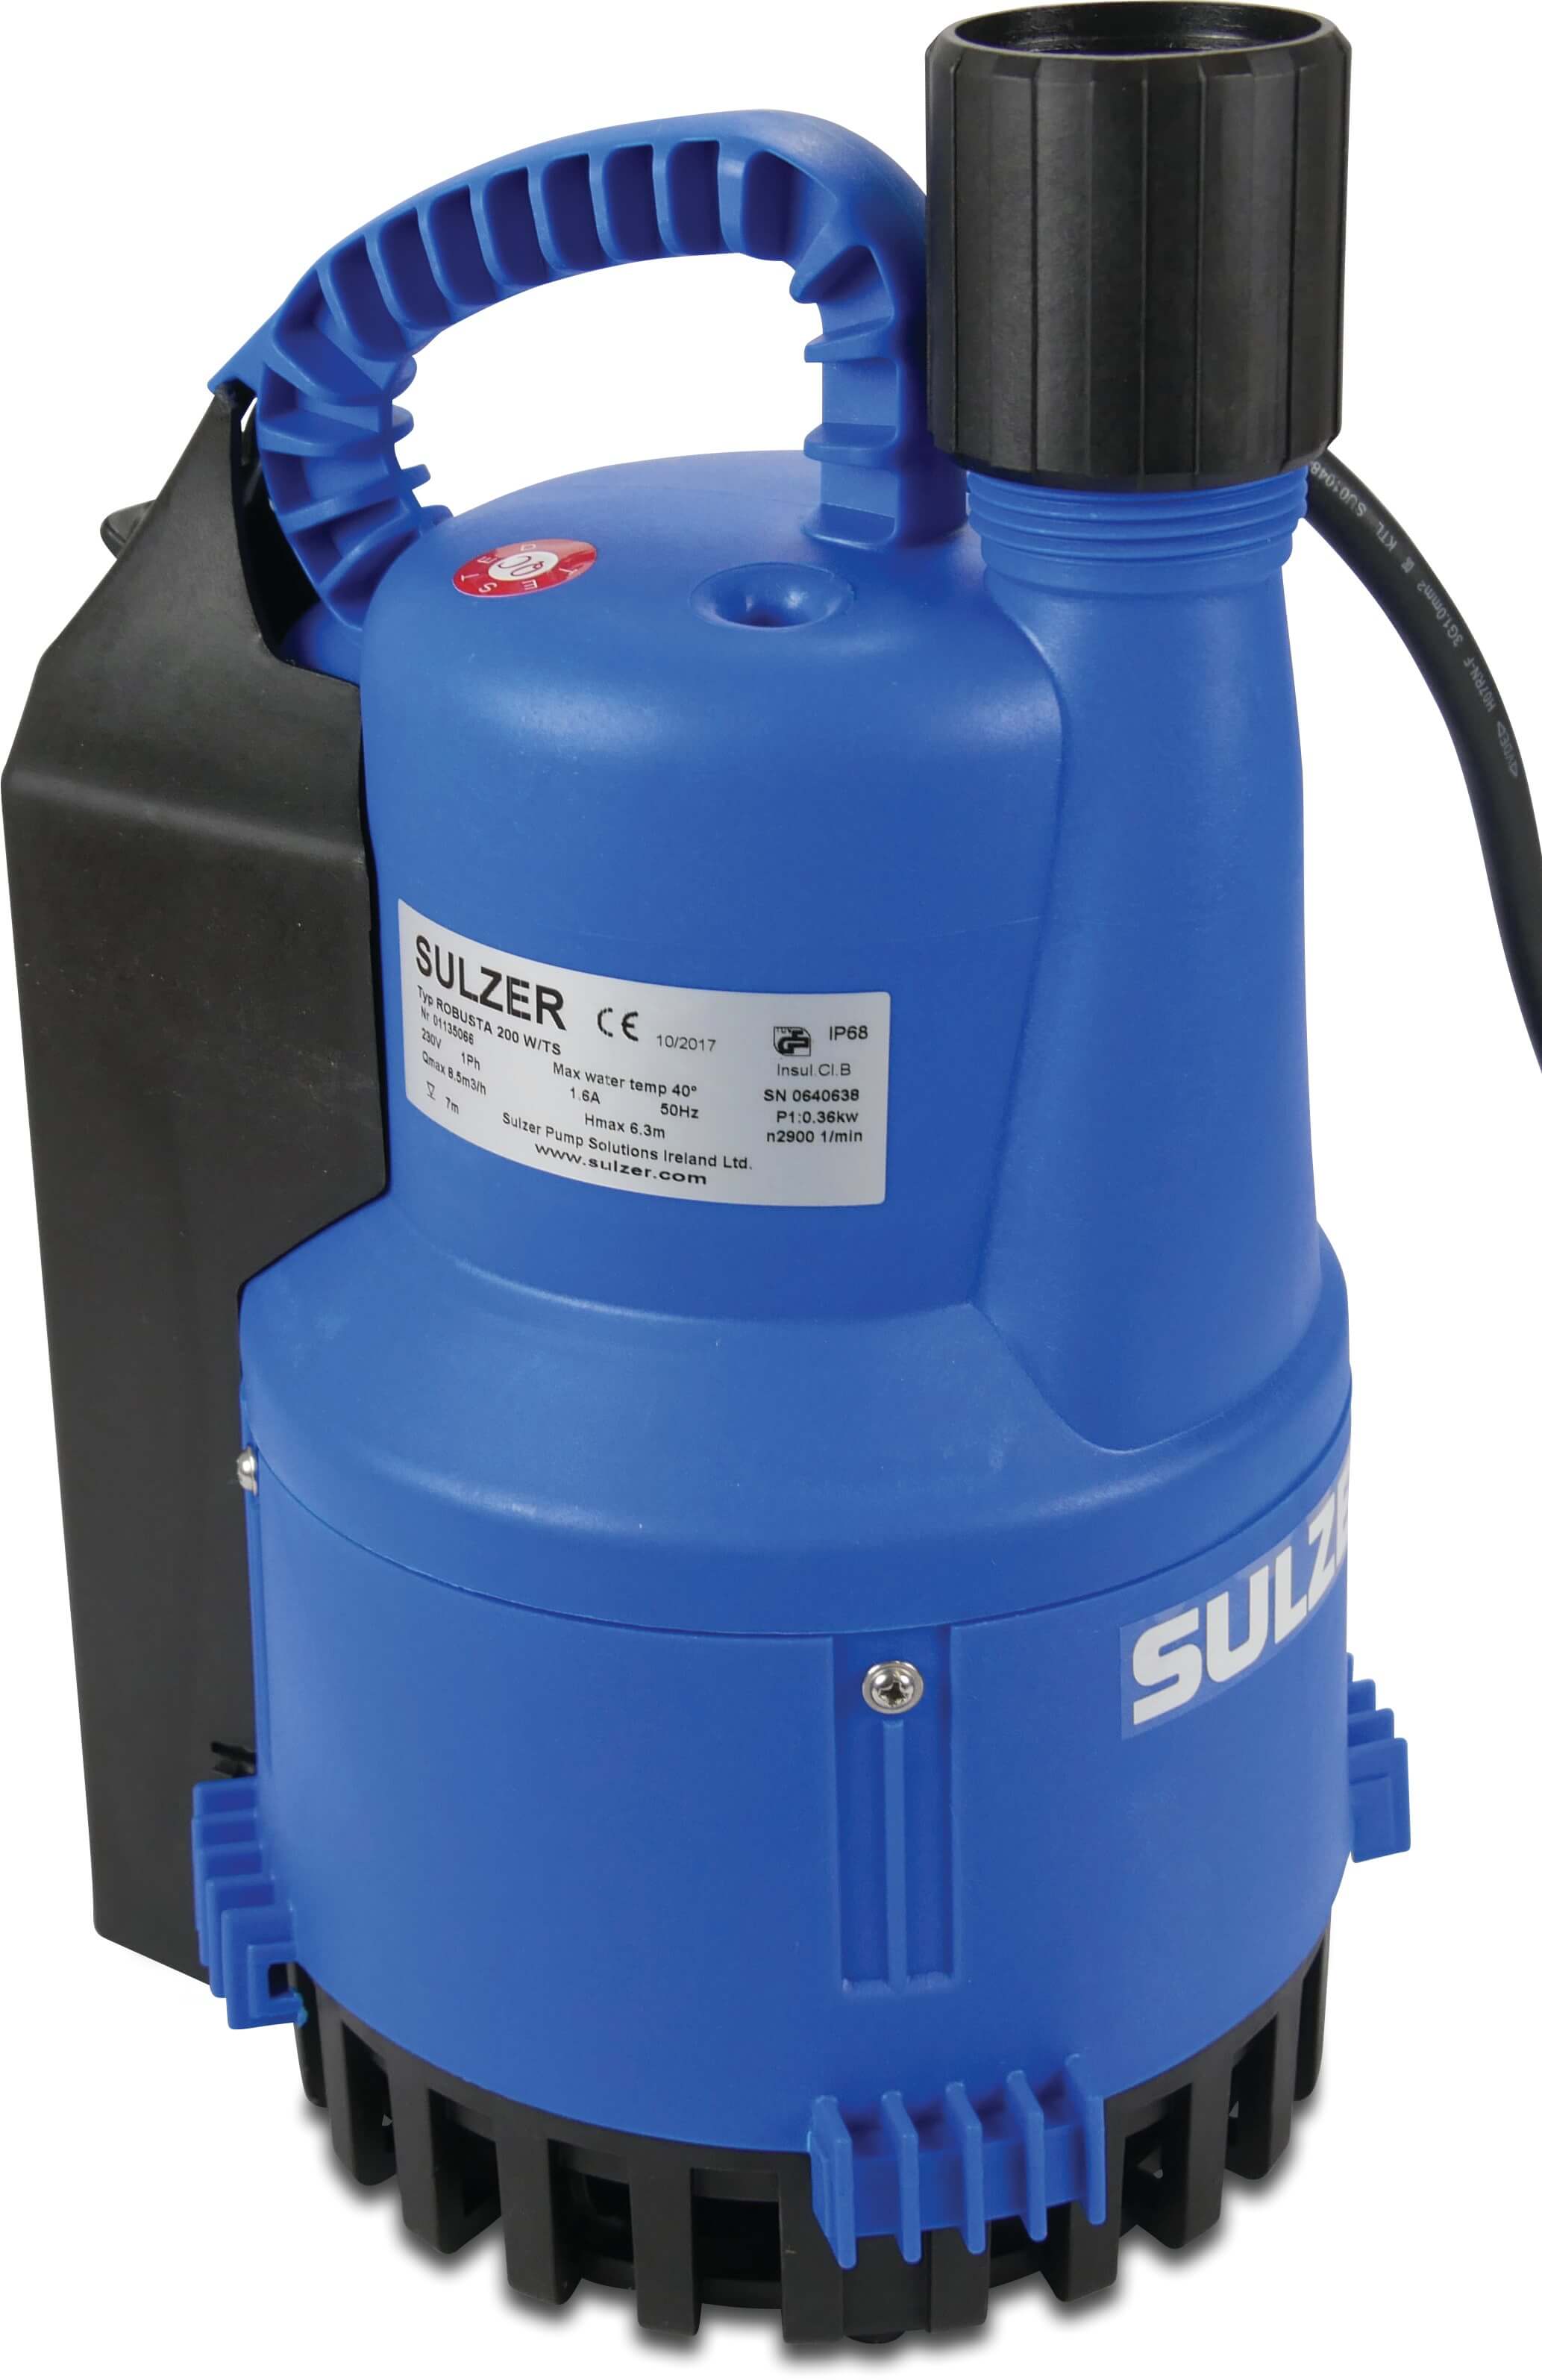 Dränkbar pump 1 1/4" invändig gänga 1,6A 230VAC svart/blå type Robusta 200TS med flytande kontakt